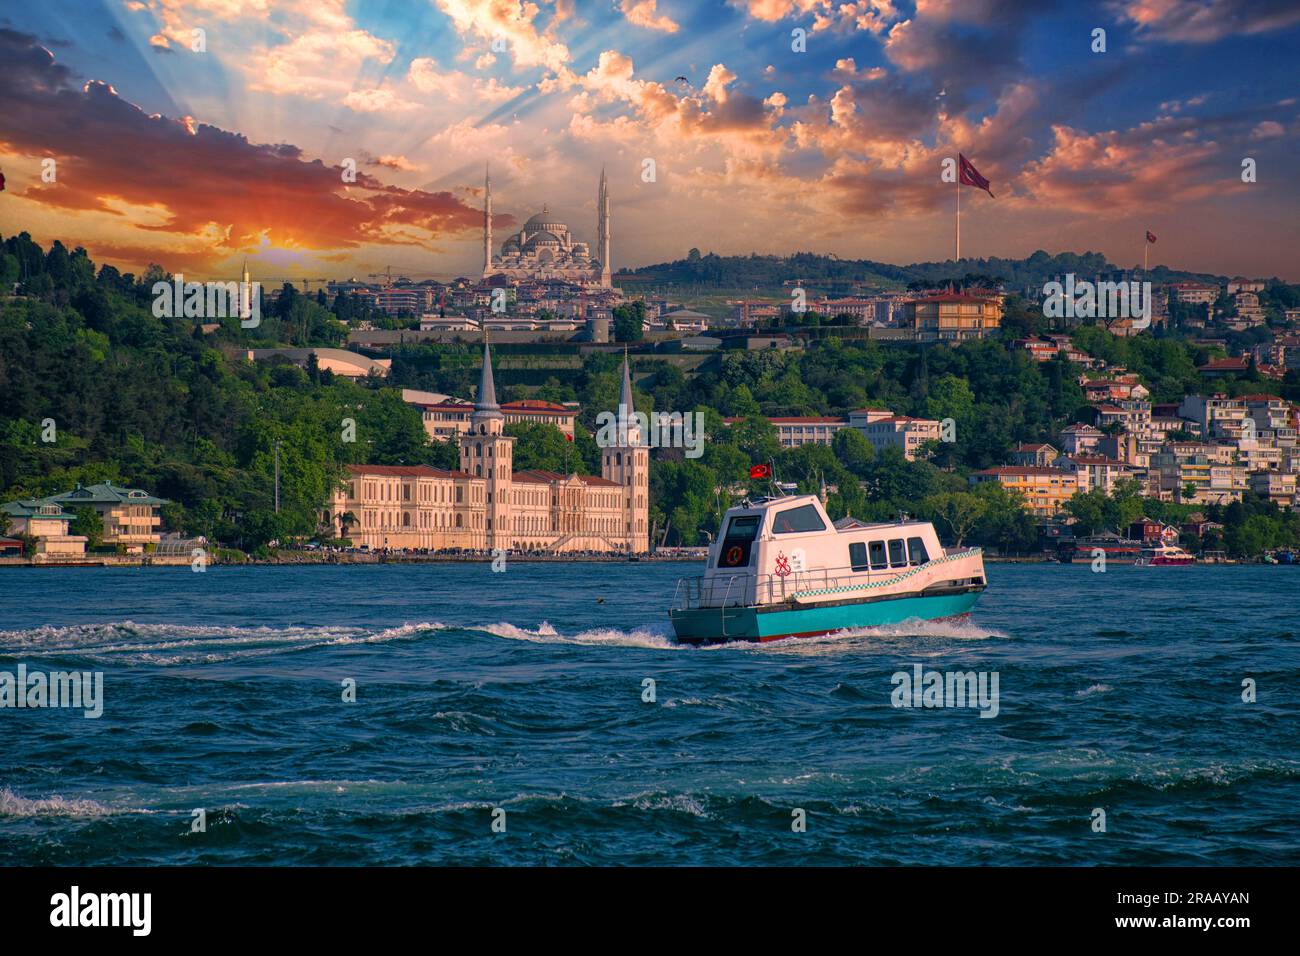 Conçu par la municipalité d'Istanbul, le nouveau véhicule de transport maritime d'Istanbul, le taxi maritime. Banque D'Images